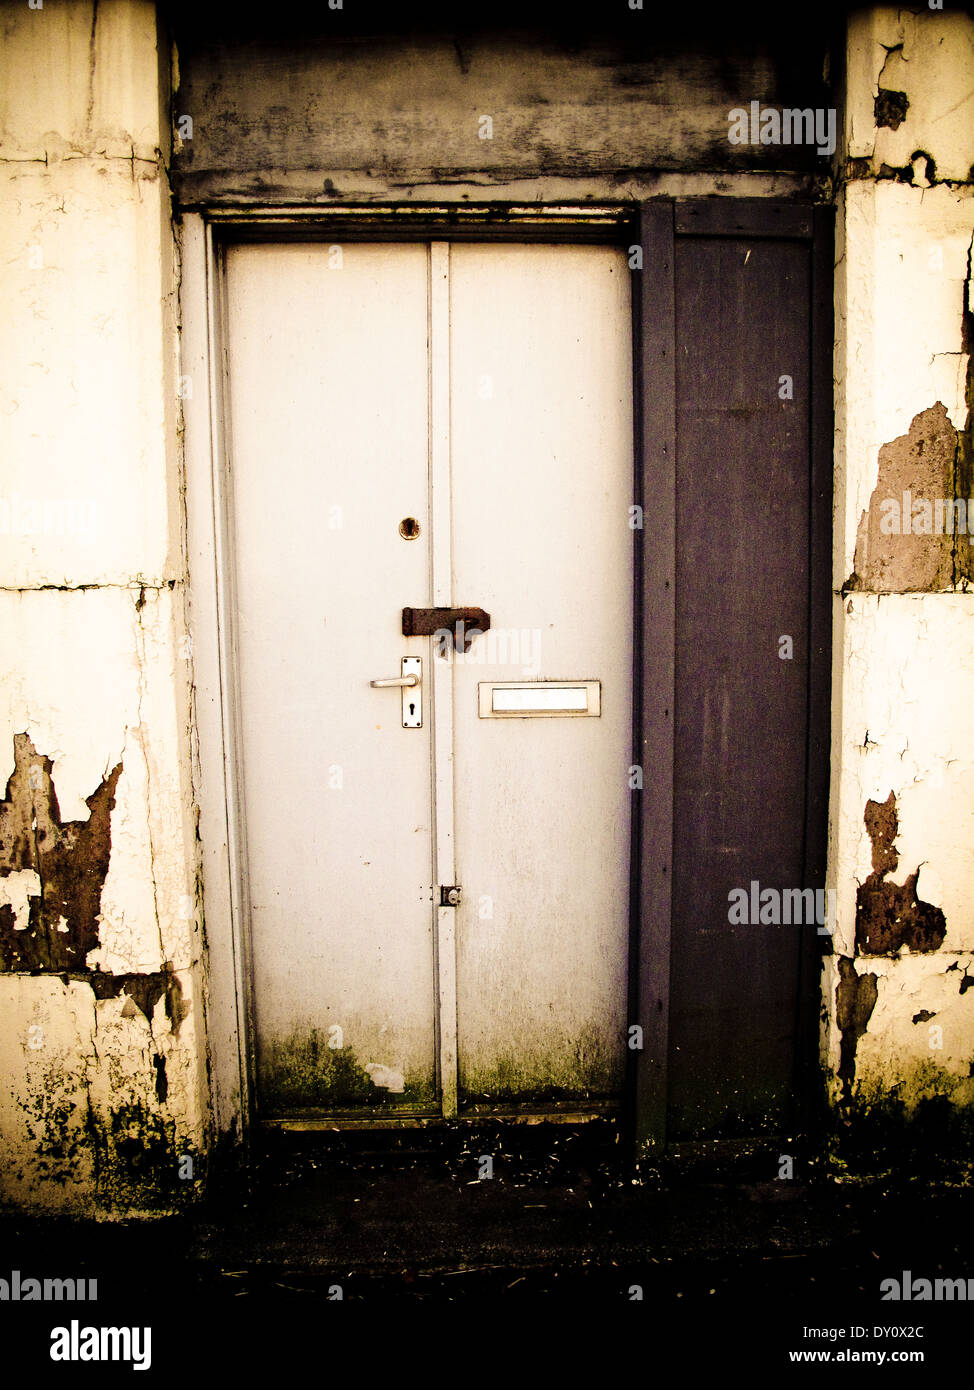 Padlocked door in worn facade Stock Photo